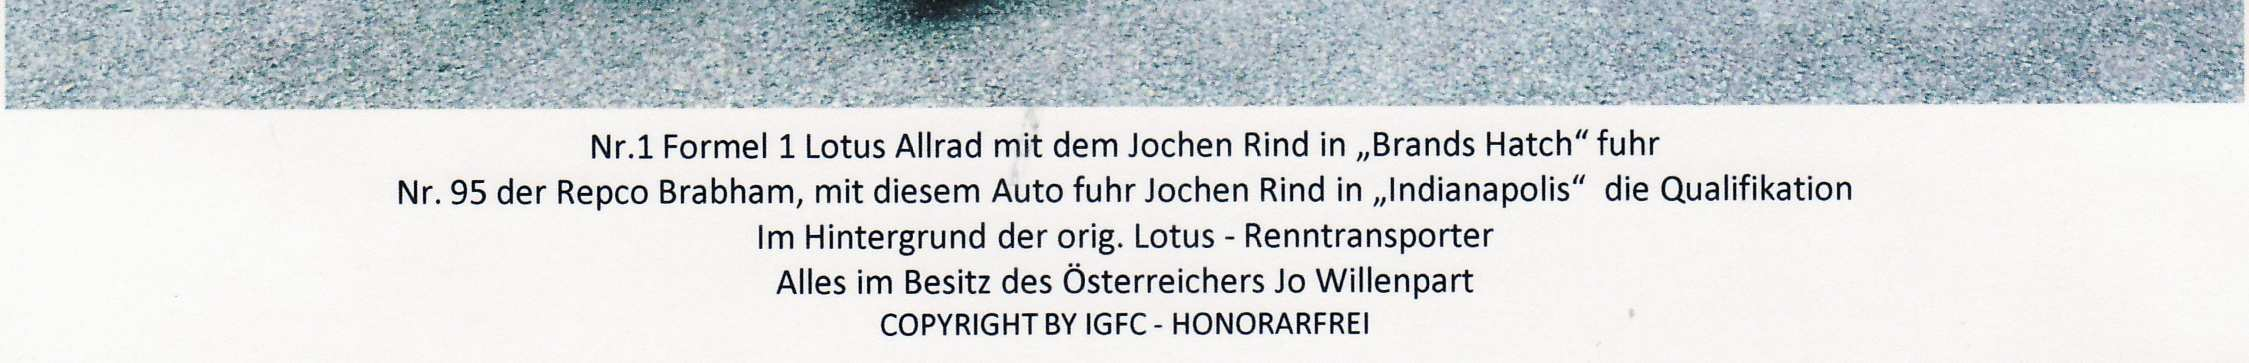 und mit Wolfgang Terschl, den Lola Rennsportwagen von und mit den Vorarlberger Alfred Stoizner, das Dallara Indy Car aus 2001 von und mit Hubert Galli aus Kärnten im